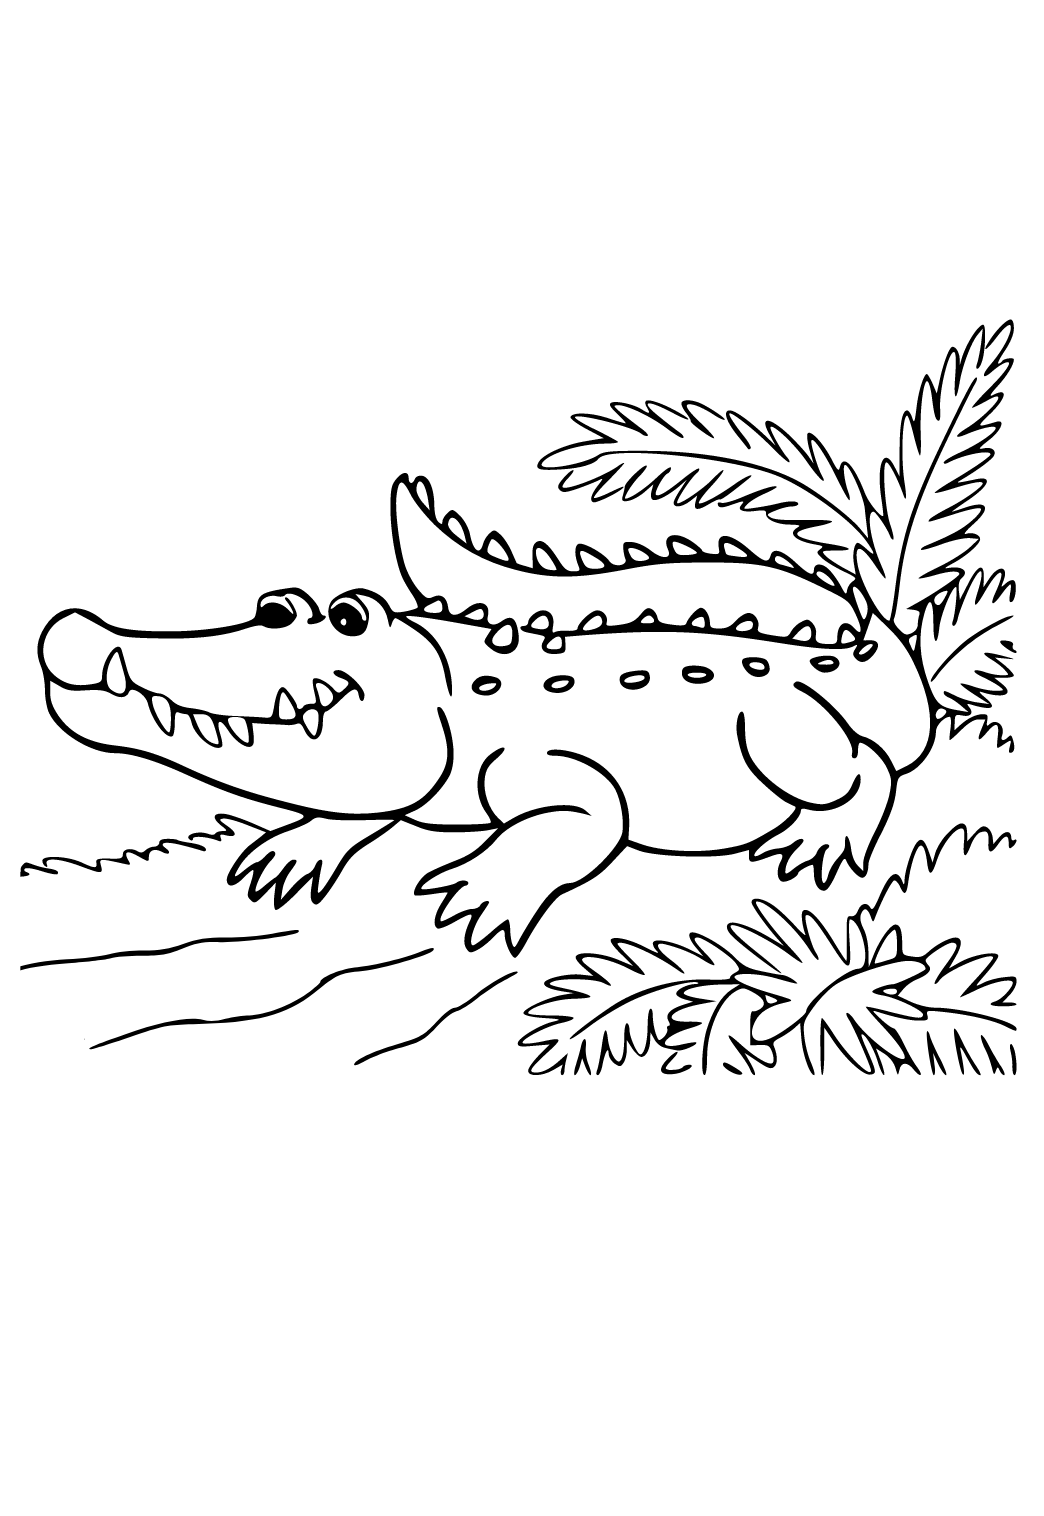 رسمة تمساح بين النباتات للتلوين